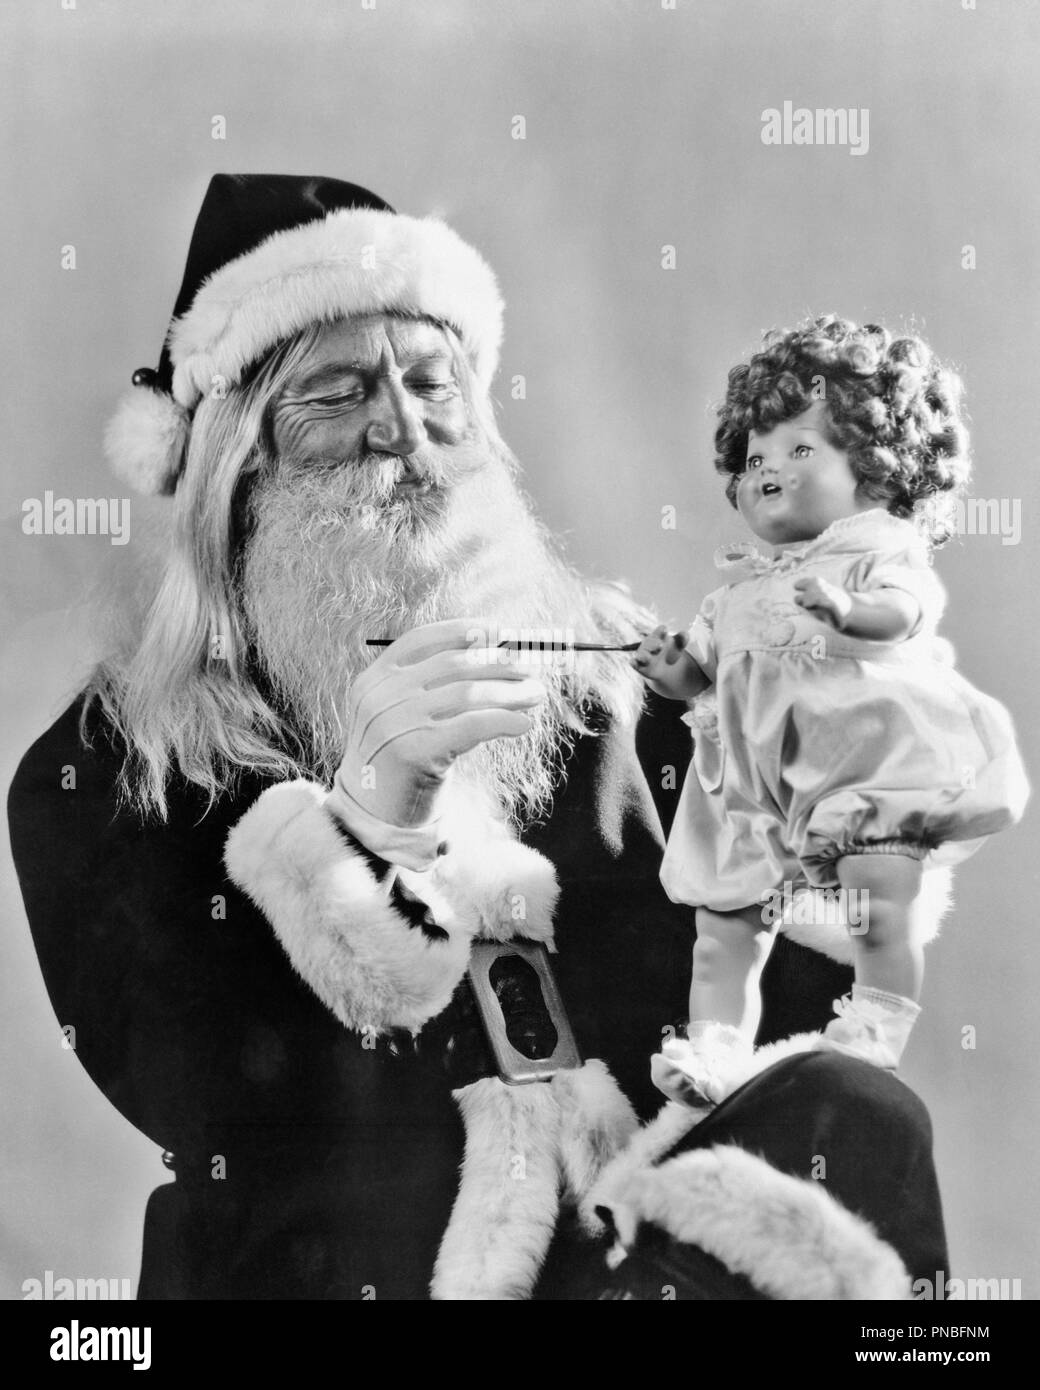 1930er Jahre Smiling Santa Clause Malerei HAND AUF SPIELZEUG Puppe - Ap 009782 CAM001 HARS SYMBOL PERSONEN MÄNNER ÄLTERER MANN SAINT älterer Erwachsener B&W ICONS OLDSTERS FRÖHLICHEN ALTEN SYMBOLIK WHISKER SANTA CLAUS CAM 001 SAINT NICHOLAS SAINT NICK OLD SAINT NICK GESICHTSBEHAARUNG LÄCHELT ÄLTESTEN NICK weißen Fell weiß - BARTGEIER BARTGEIER FREUDIGE KRIS KRINGLE KRIS KRINGLE SYMBOLISCHEN WEISSEN WHISKER WEISSE SCHNURRHAARE BÄRTE NICHOLAS SCHNURRHAARE SCHWARZ UND WEISS KAUKASISCHEN ETHNIE VOM ALTMODISCHEN Stockfoto